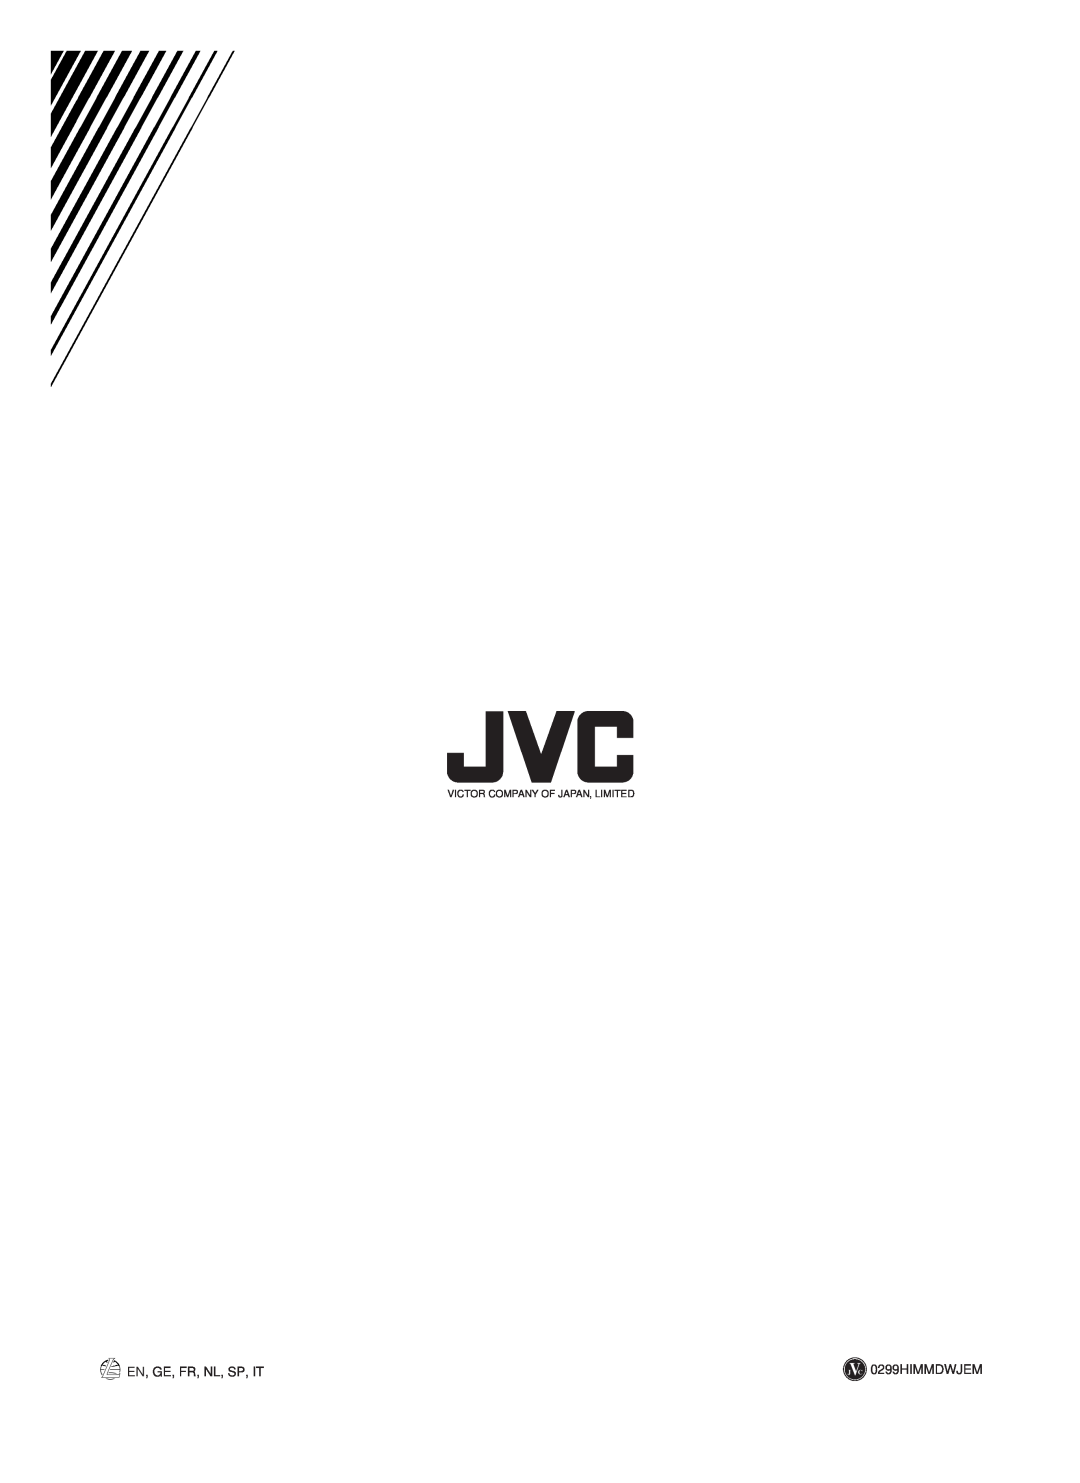 JVC RX-558RBK manual En, Ge, Fr, Nl, Sp, It, J C 0299HIMMDWJEM, Victor Company Of Japan, Limited 